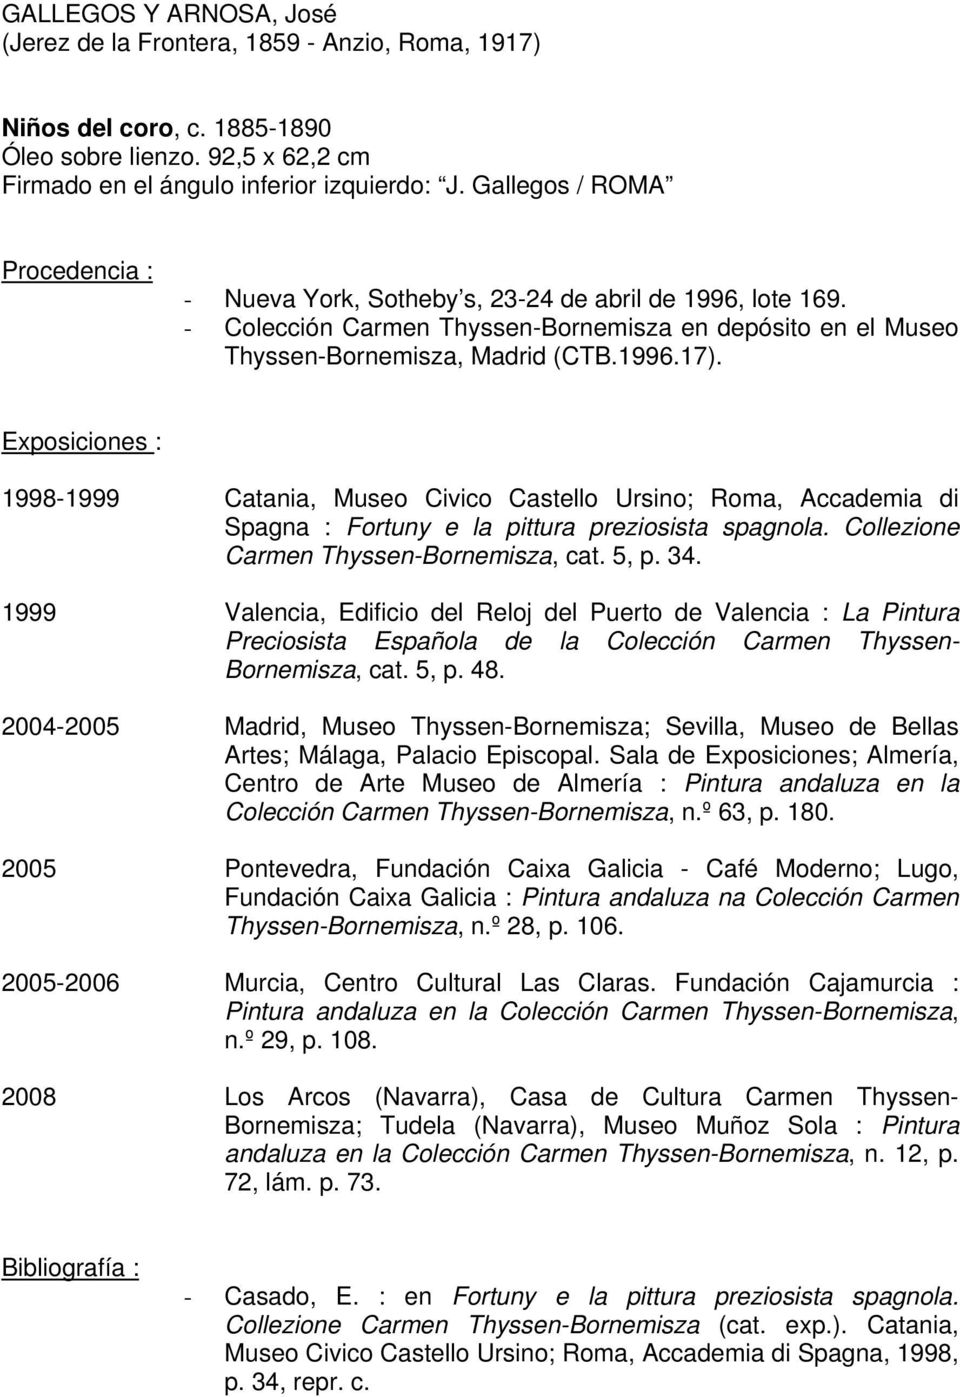 Exposiciones : 1998-1999 Catania, Museo Civico Castello Ursino; Roma, Accademia di Spagna : Fortuny e la pittura preziosista spagnola. Collezione Carmen Thyssen-Bornemisza, cat. 5, p. 34.